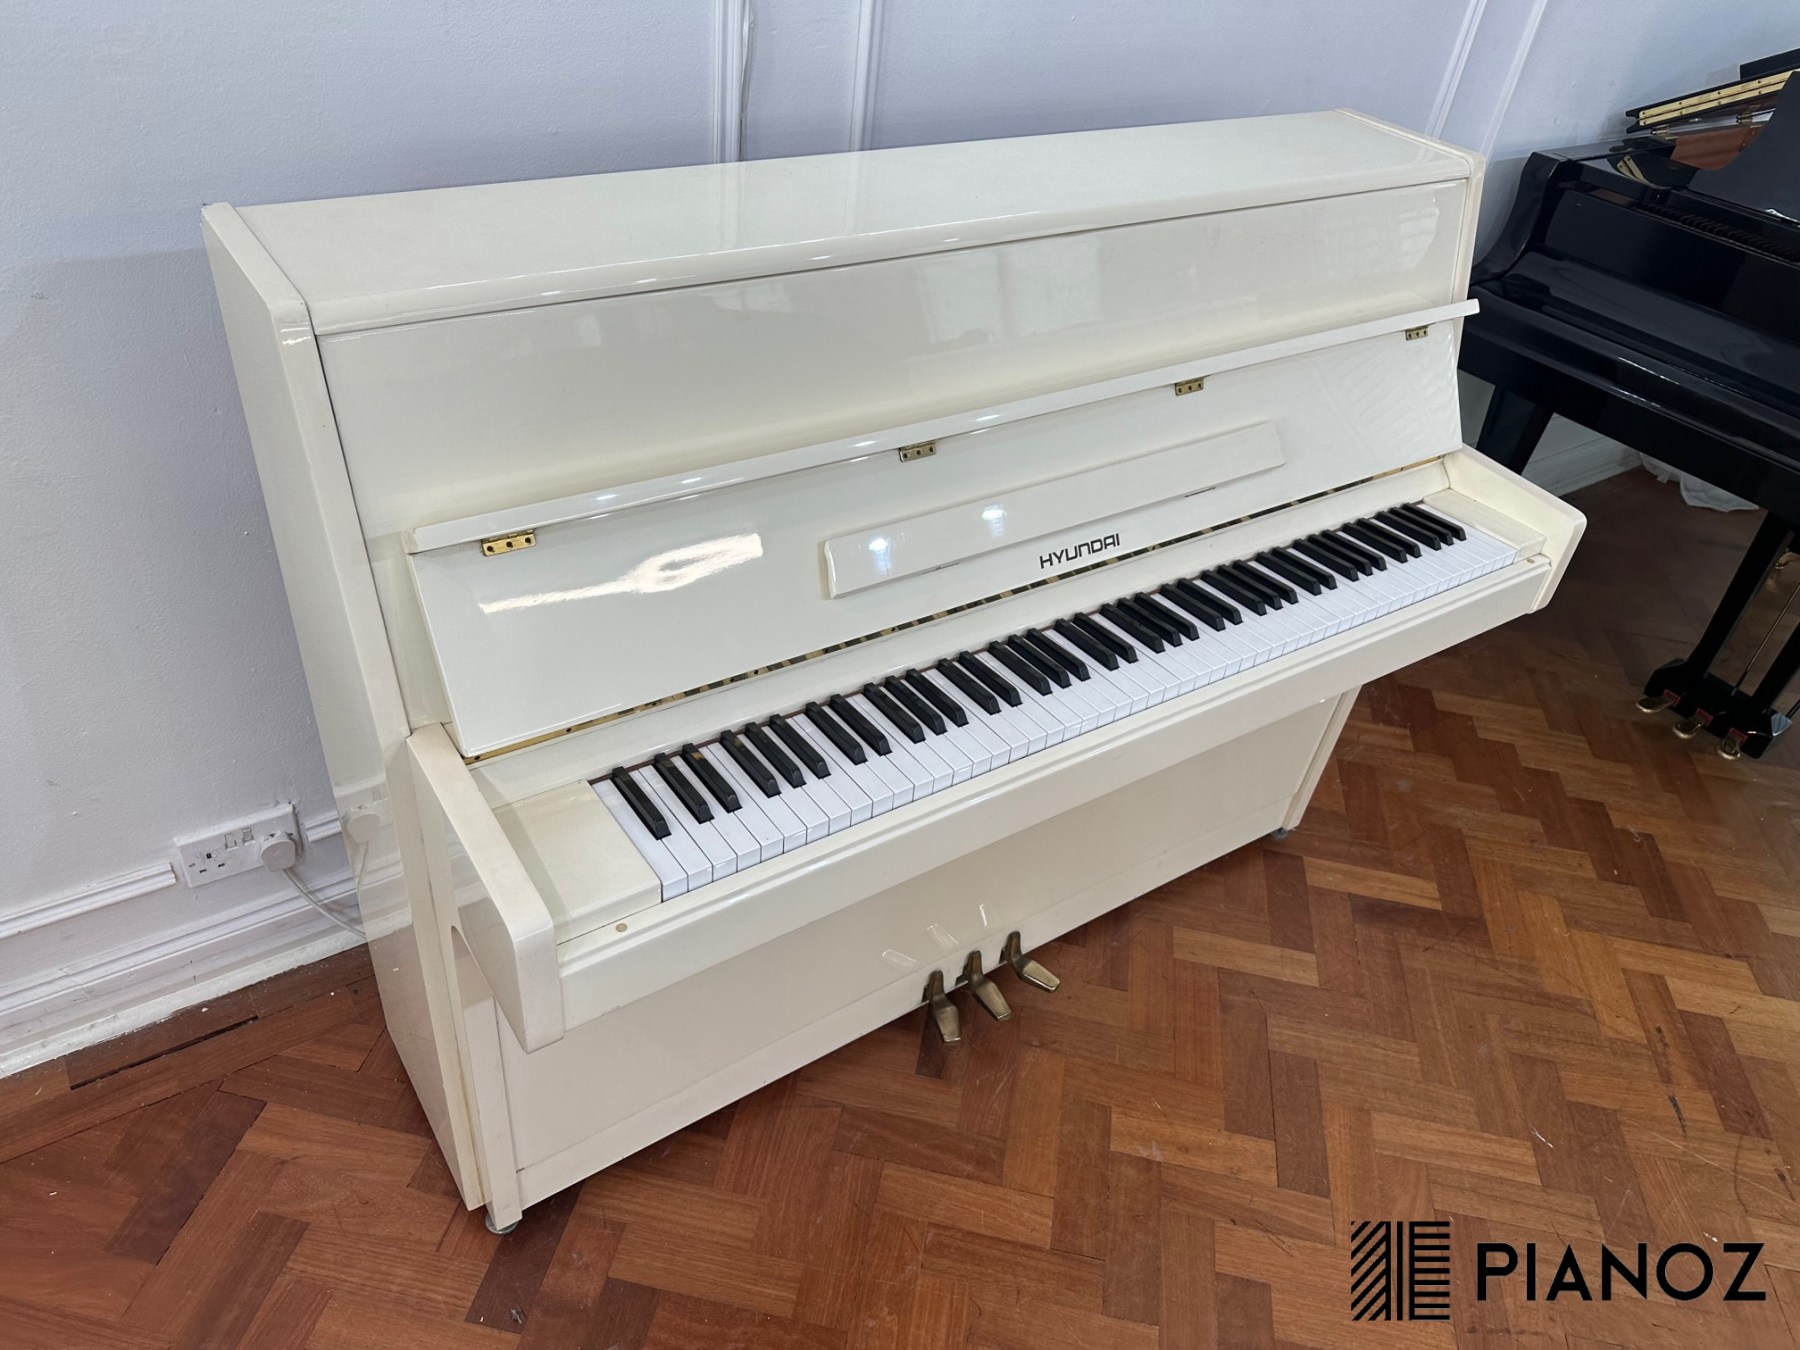 Hyundai White Upright Piano piano for sale in UK